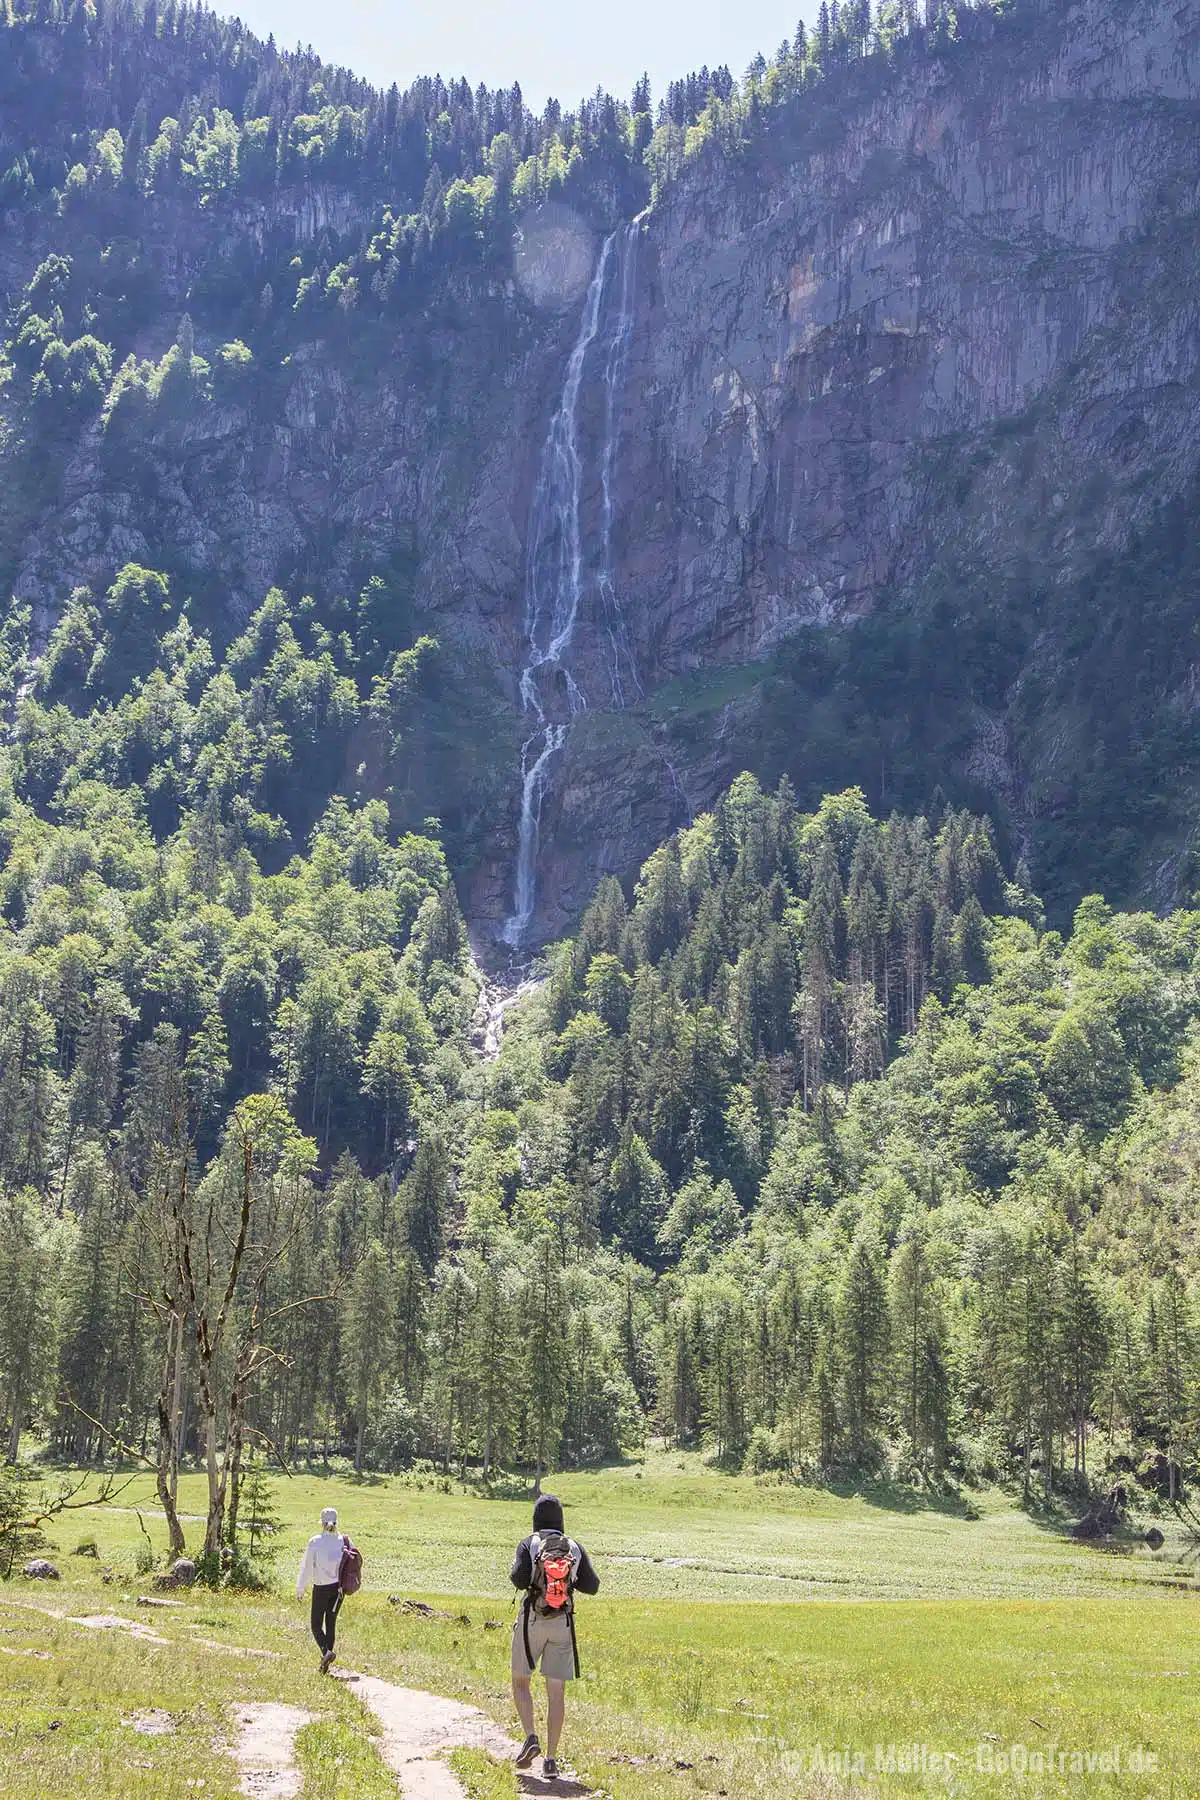 Höchster Wasserfall in Deutschland - der Röthbachfall